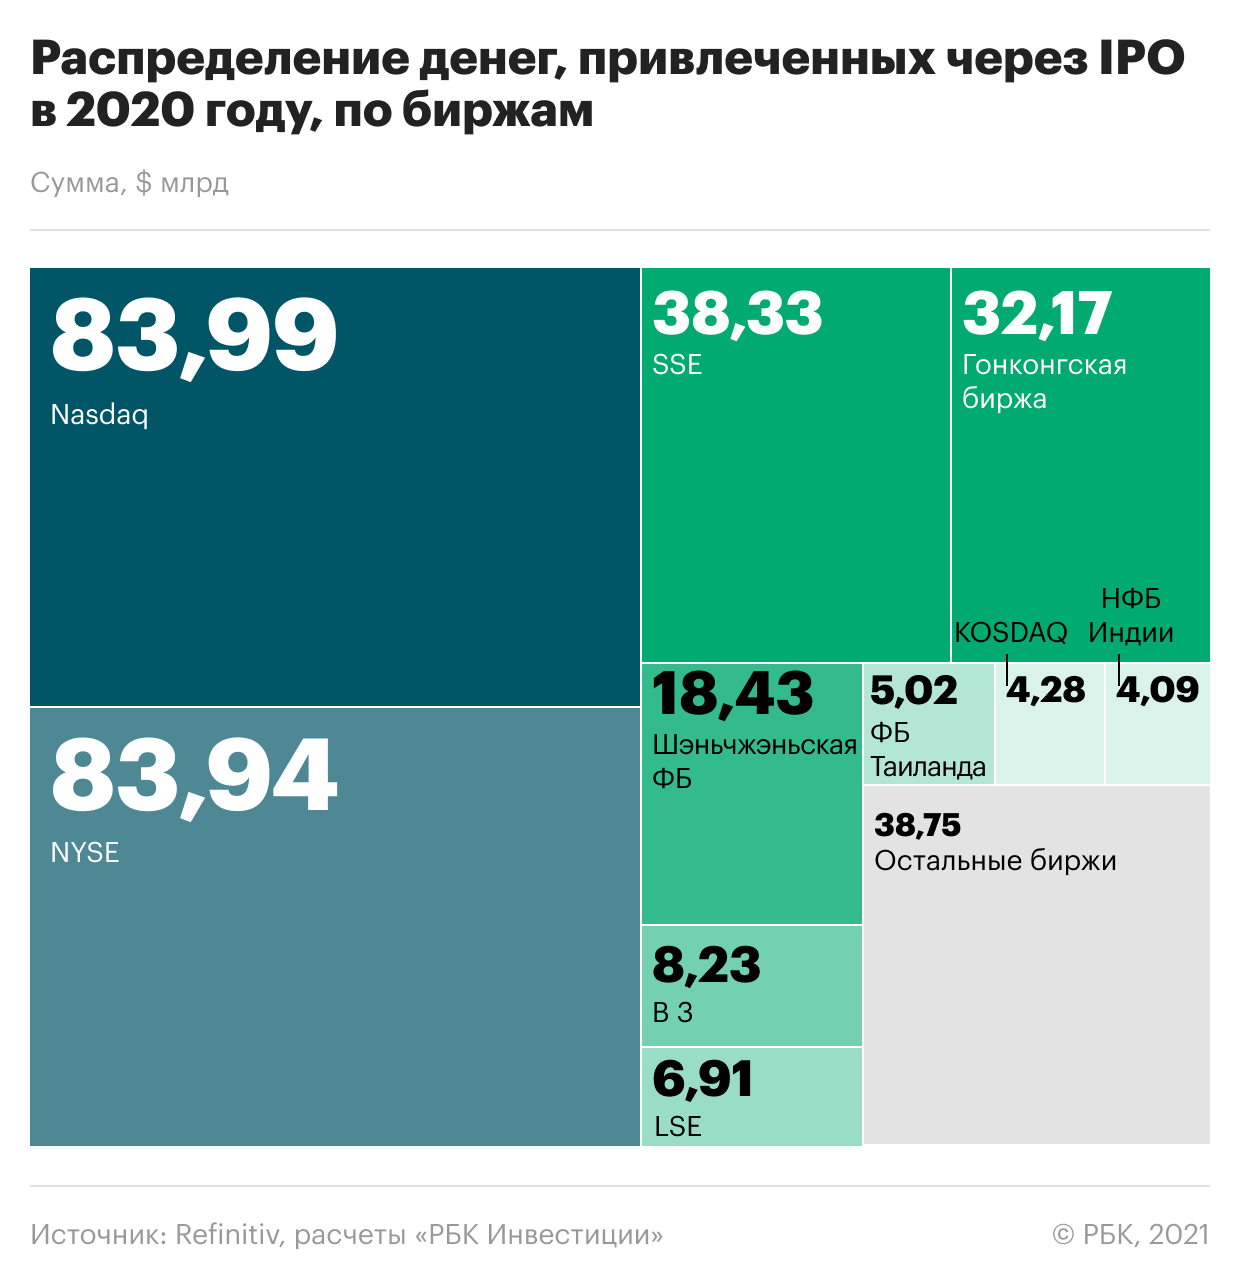 Календарь ipo. Мировой рынок IPO. IPO инвестиции. Статистика IPO 2020. Самые громкие IPO 2020.